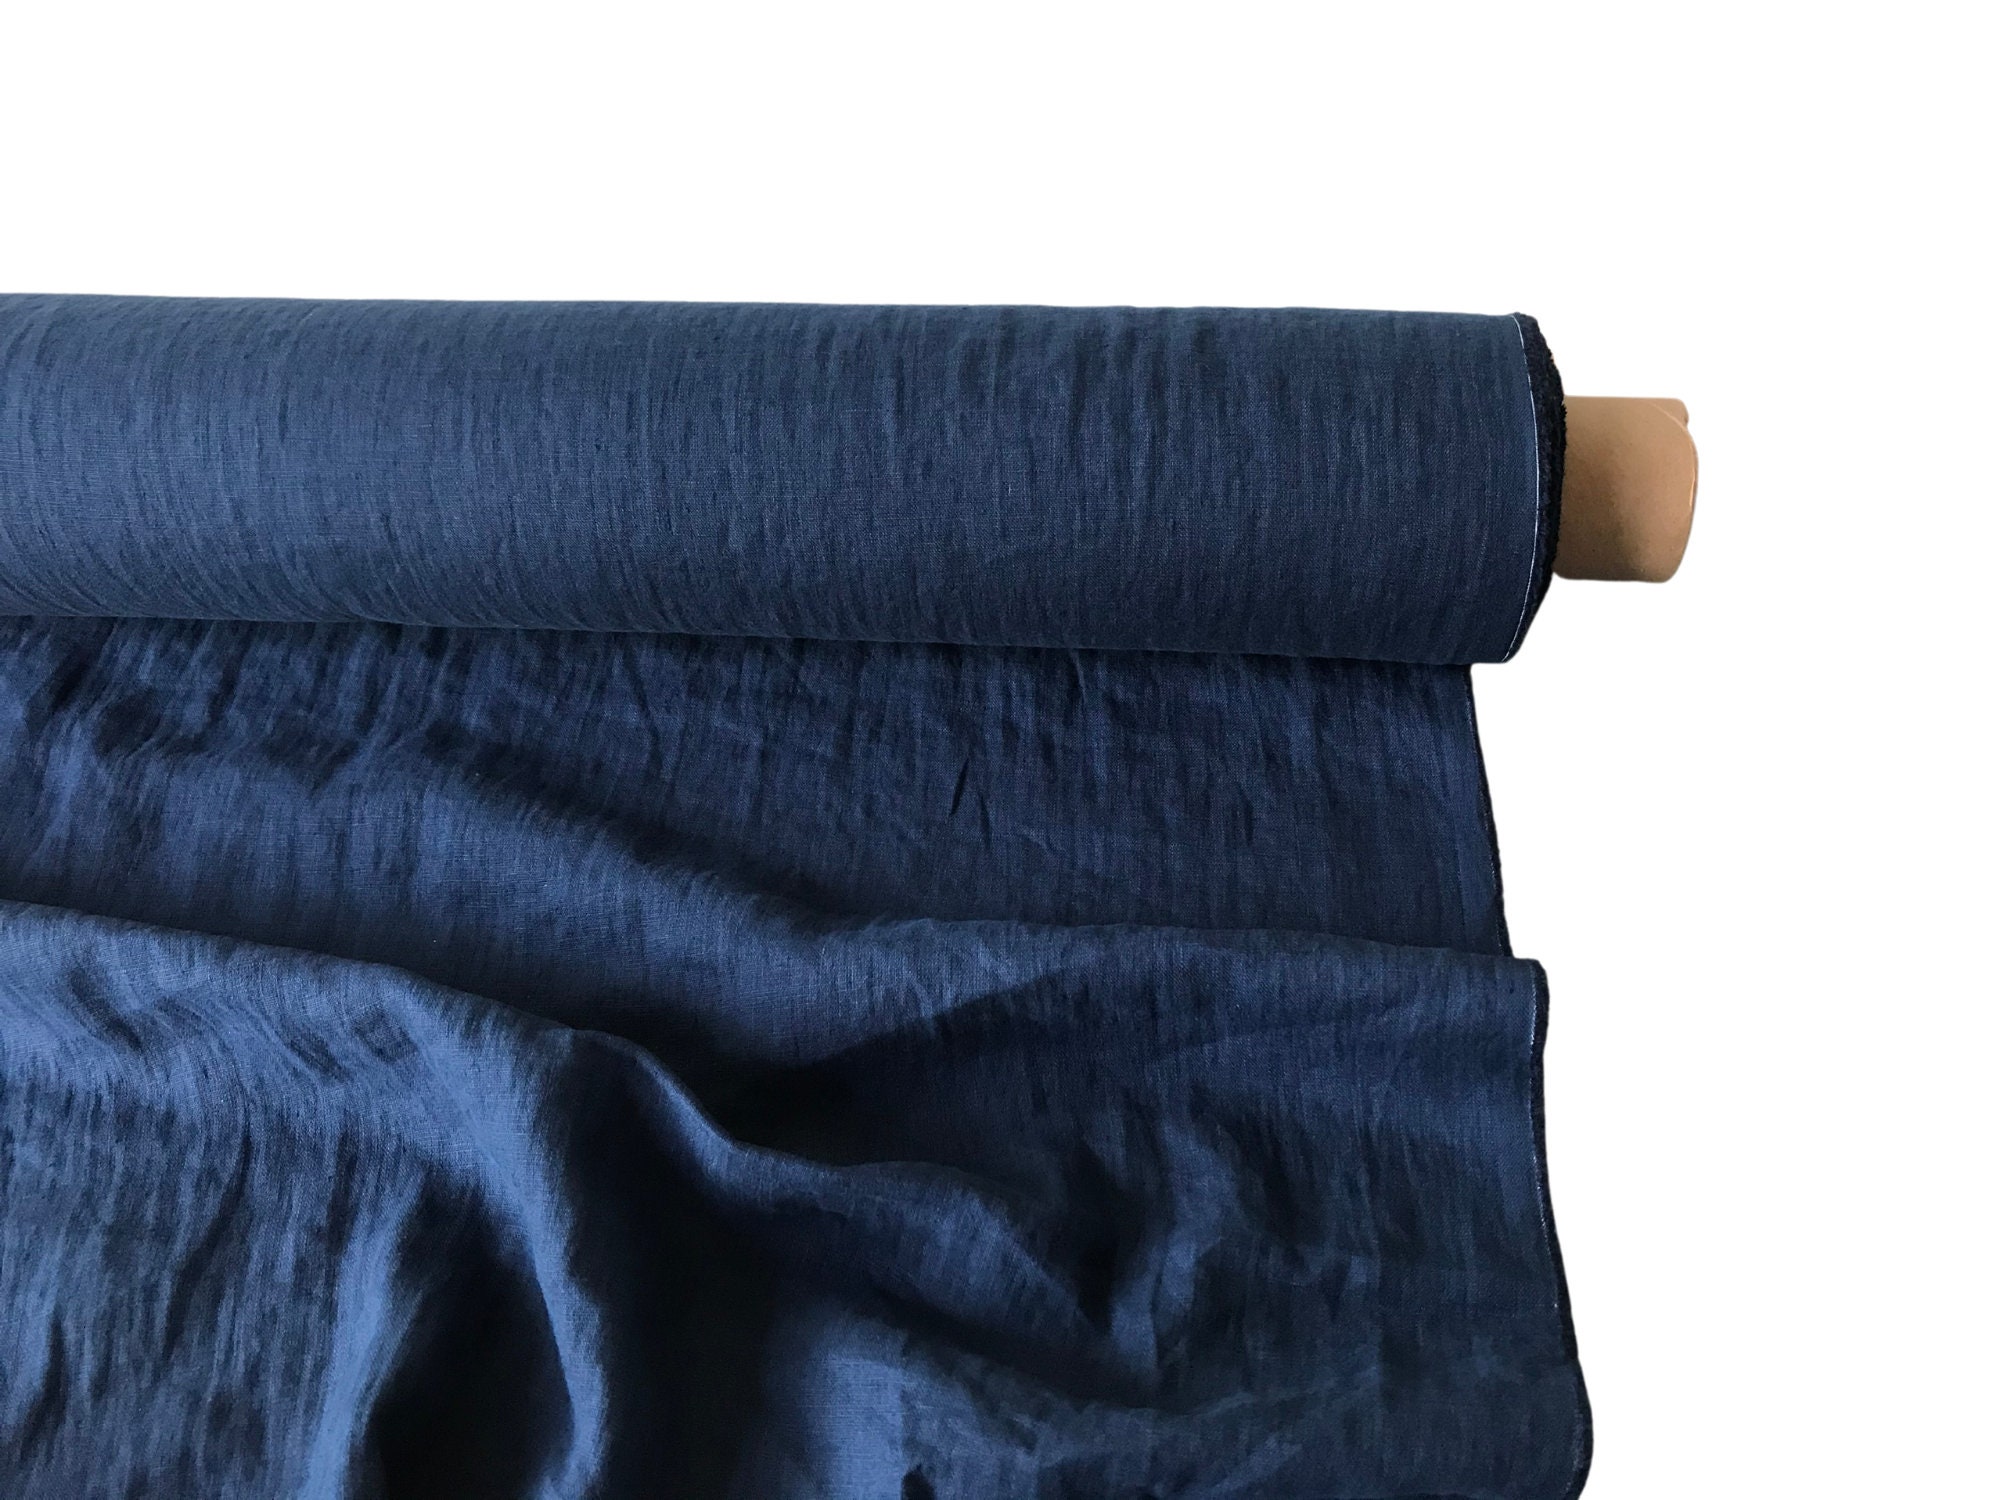 Softened Linen Wool Blend Fabric, Medium Weight Navy Blue Linen